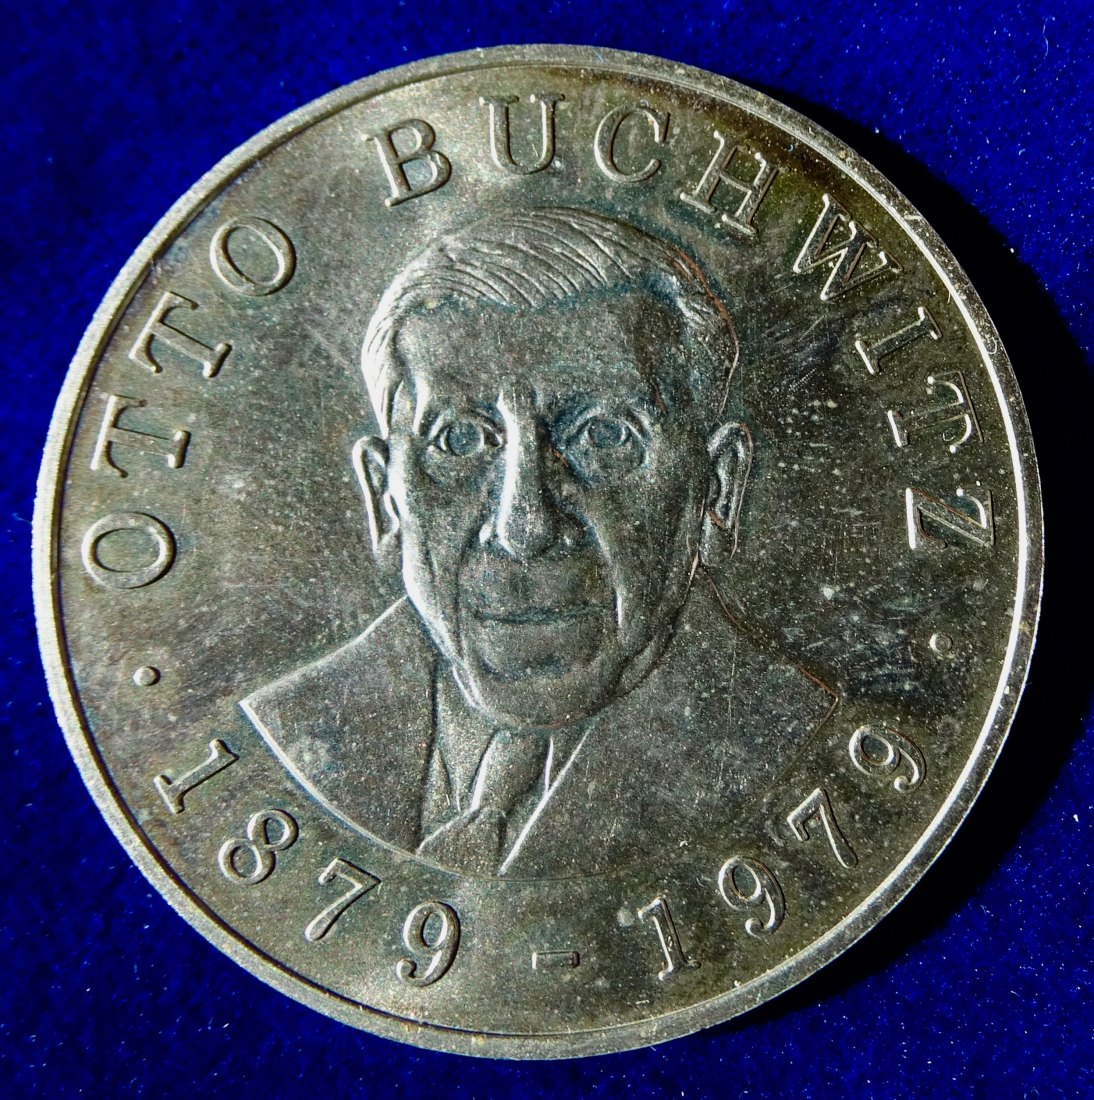  Medicina in Nummis Medaille Rotes Kreuz 1979 Otto Buchwitz 100. Geburtstag   